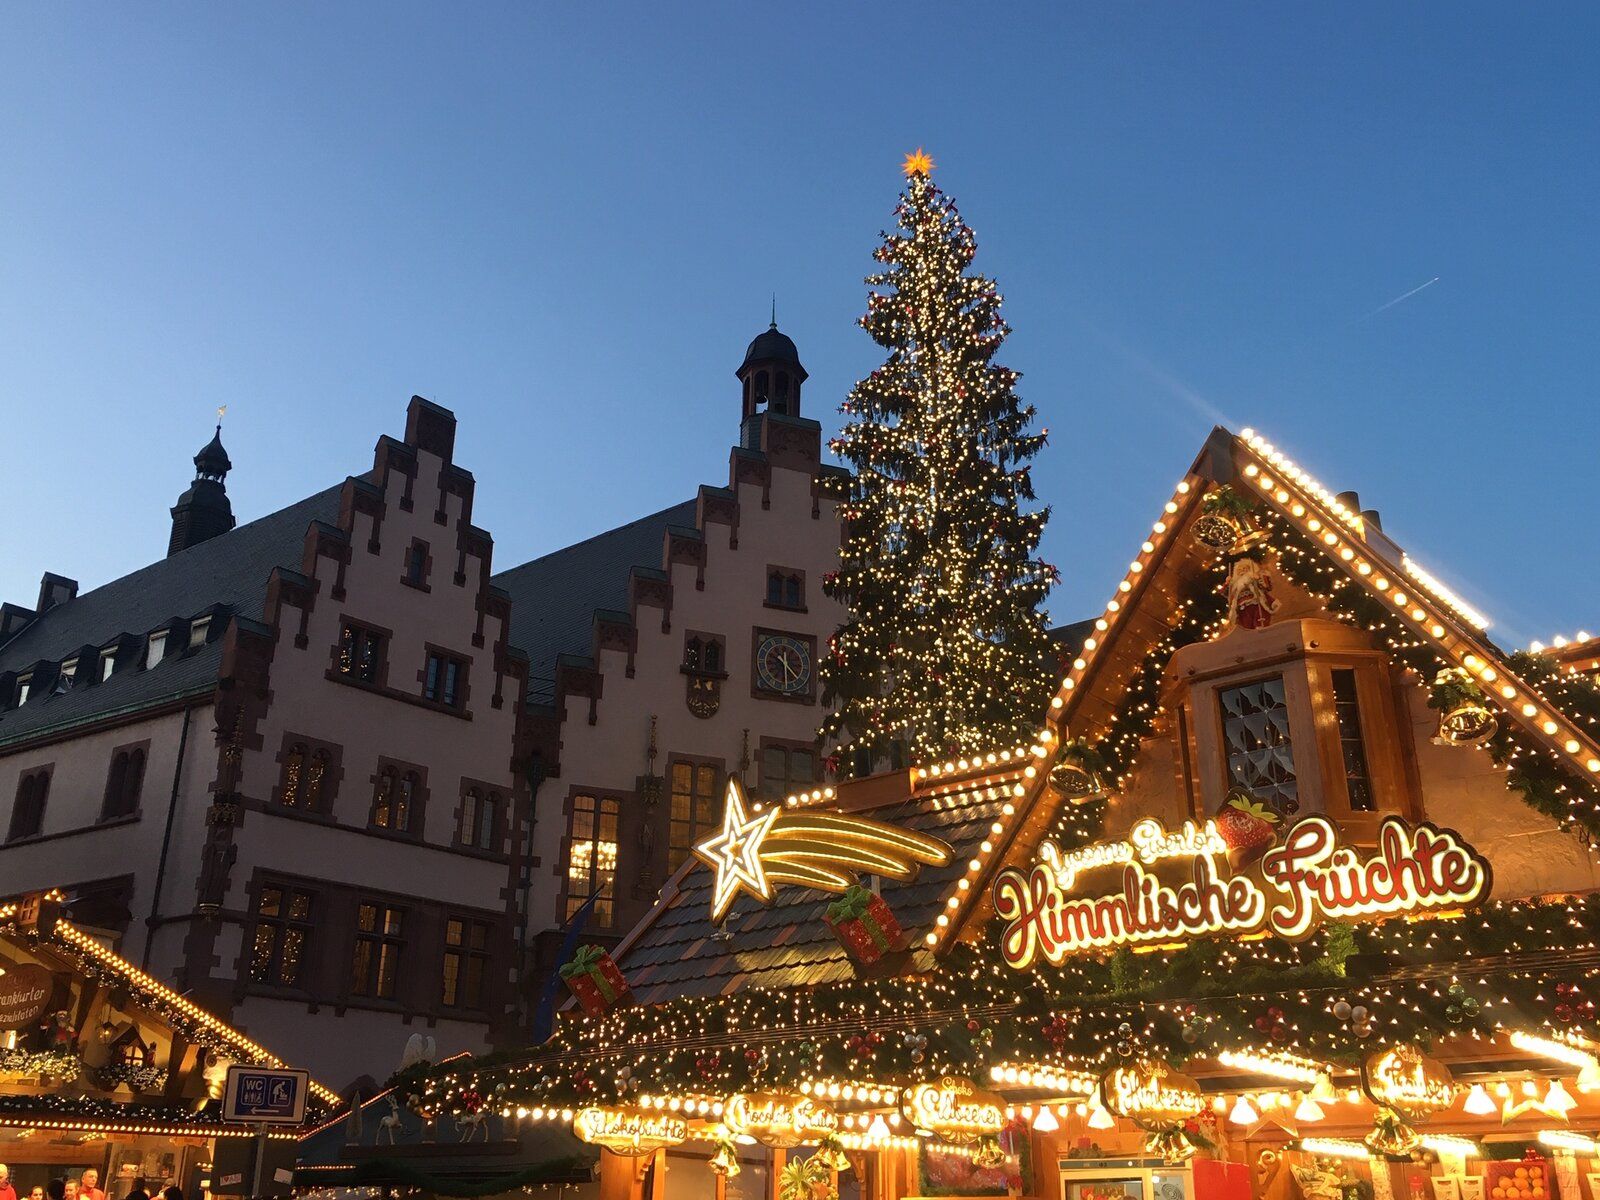 Mercado de Natal Frankfurt